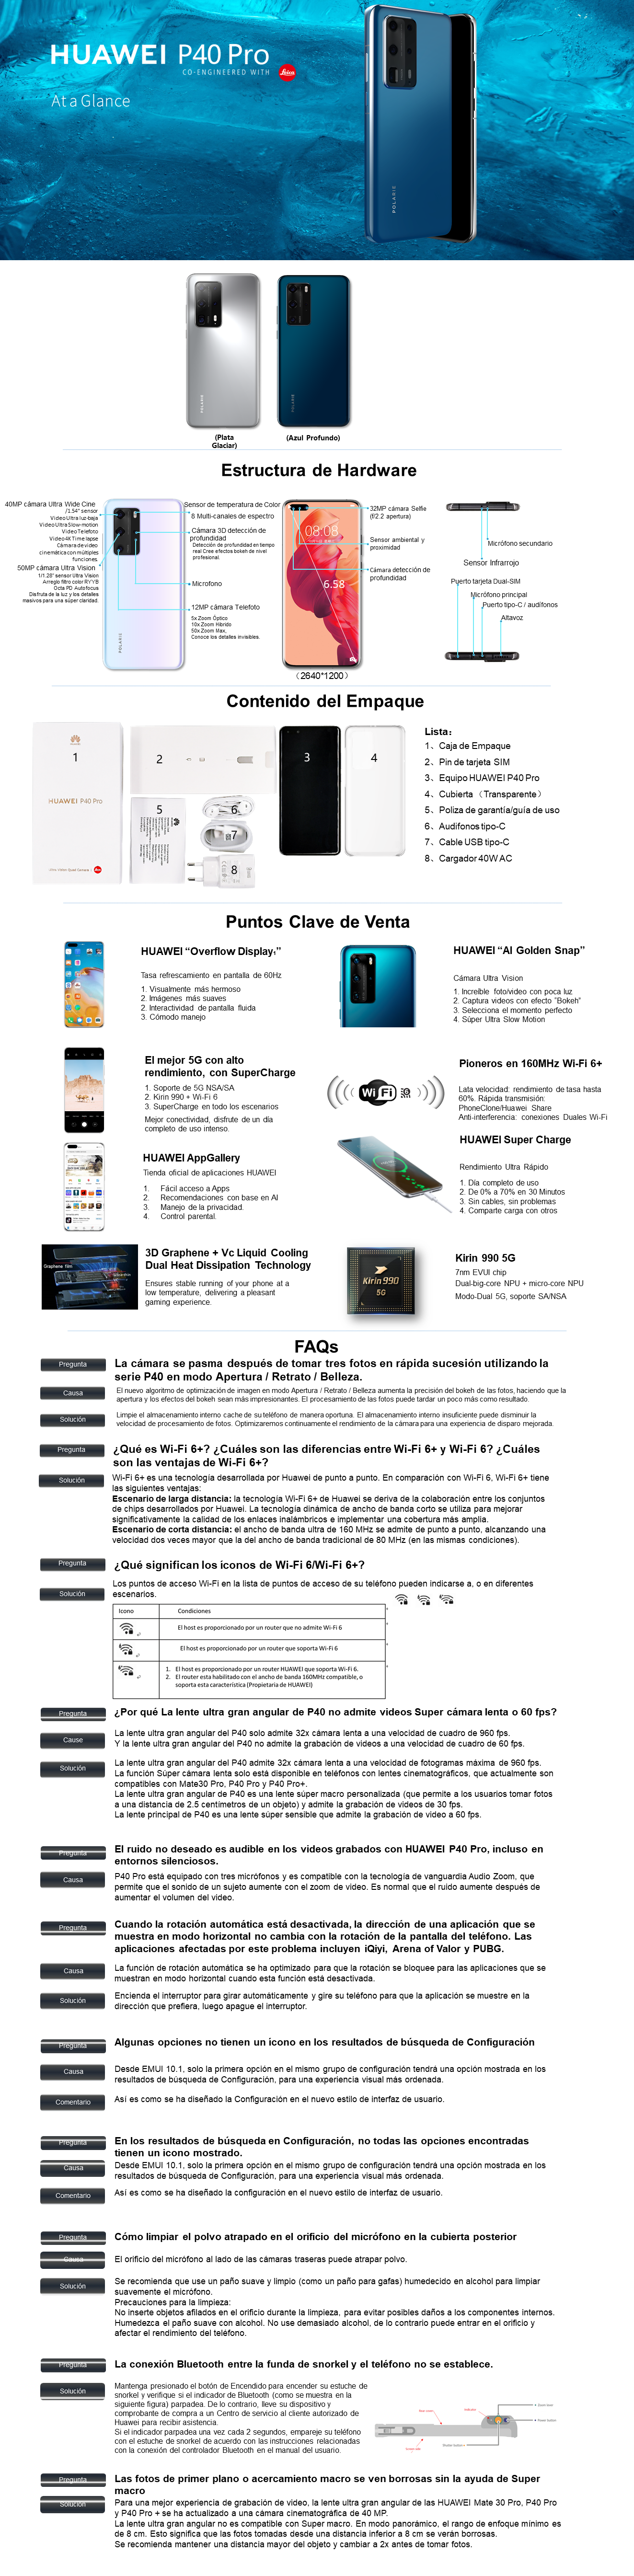 Huawei P40 Pro: Características y todos los detalles del P40 Pro